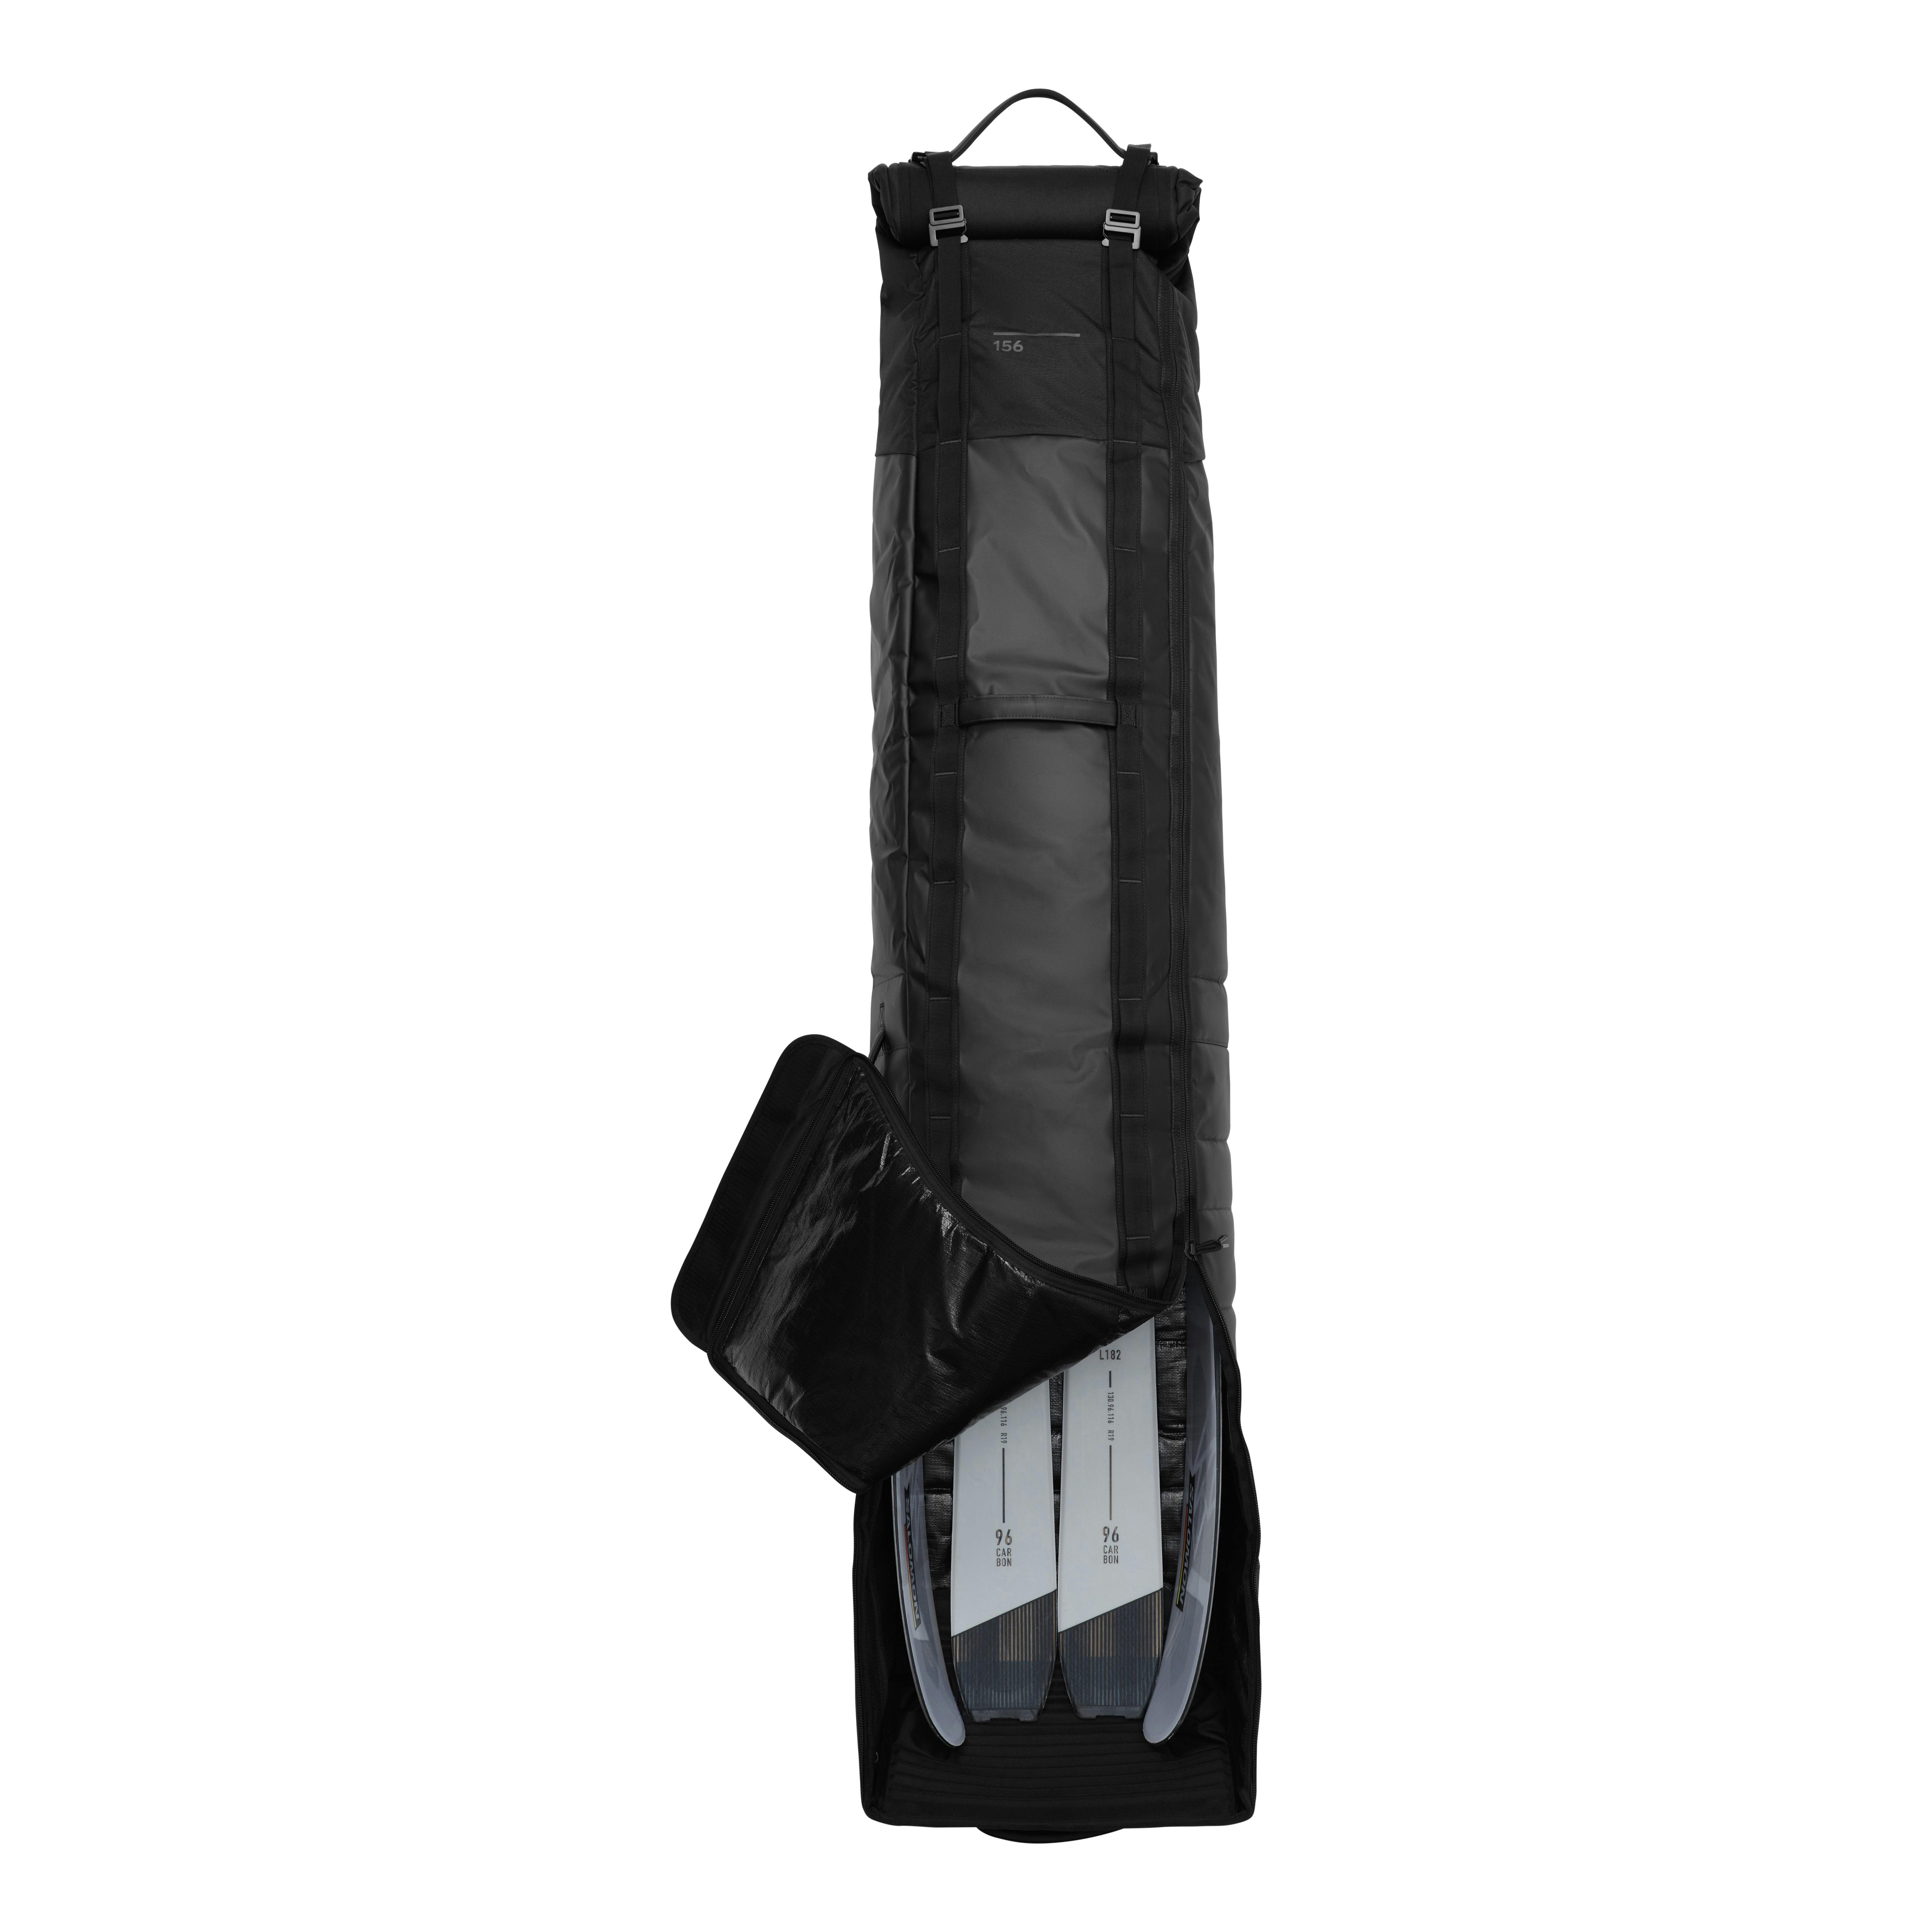 græsplæne i går tæerne DB Journey Snow Roller Pro Equipment Bag - 127L - Black Out | Luggage |  Huckberry